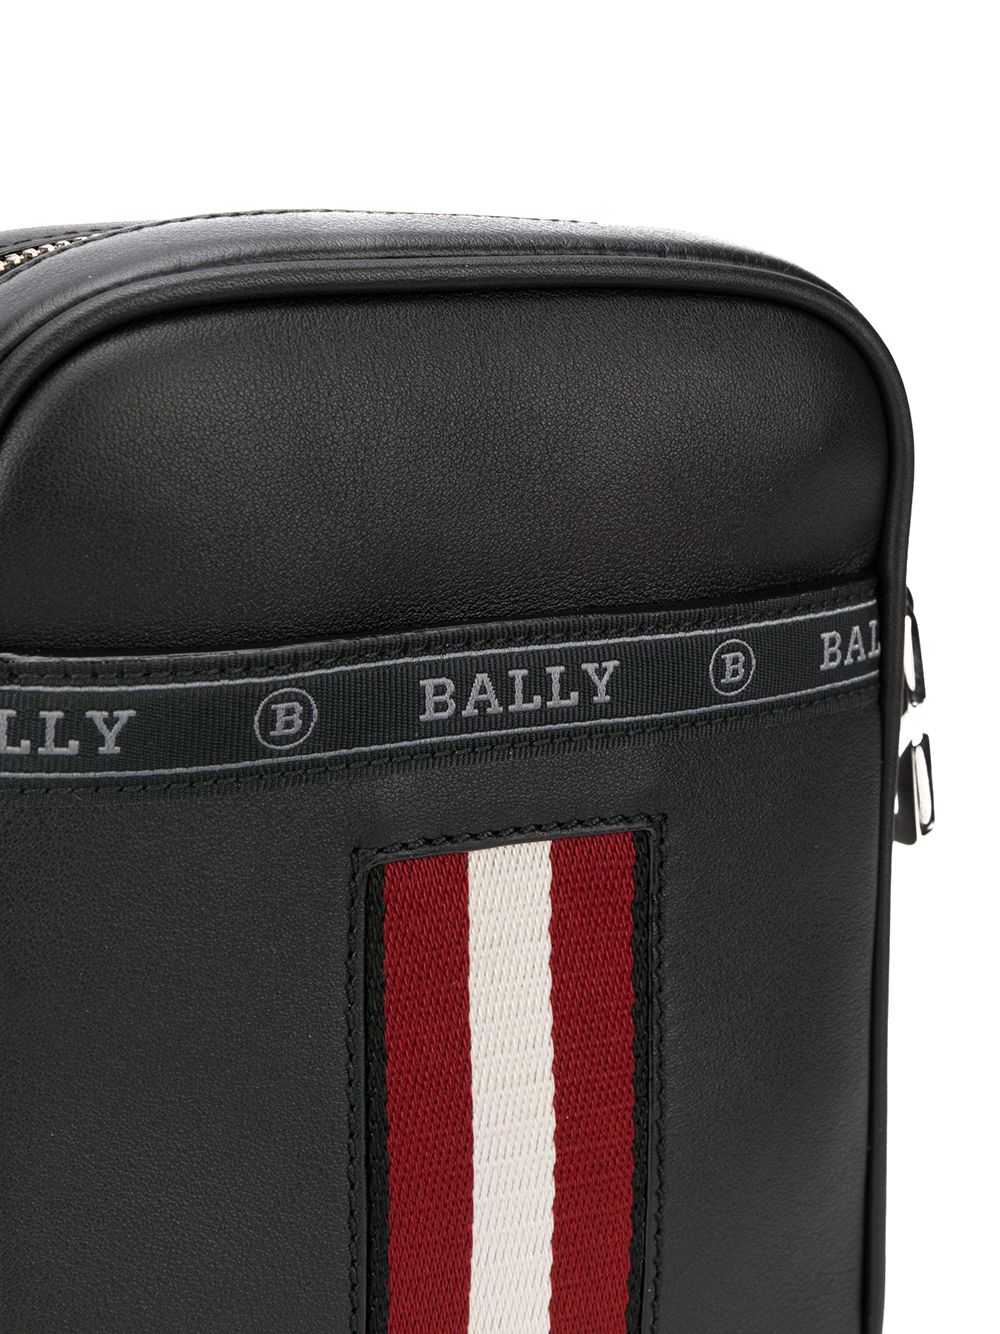 фото Bally сумка-мессенджер с ремешком и логотипом